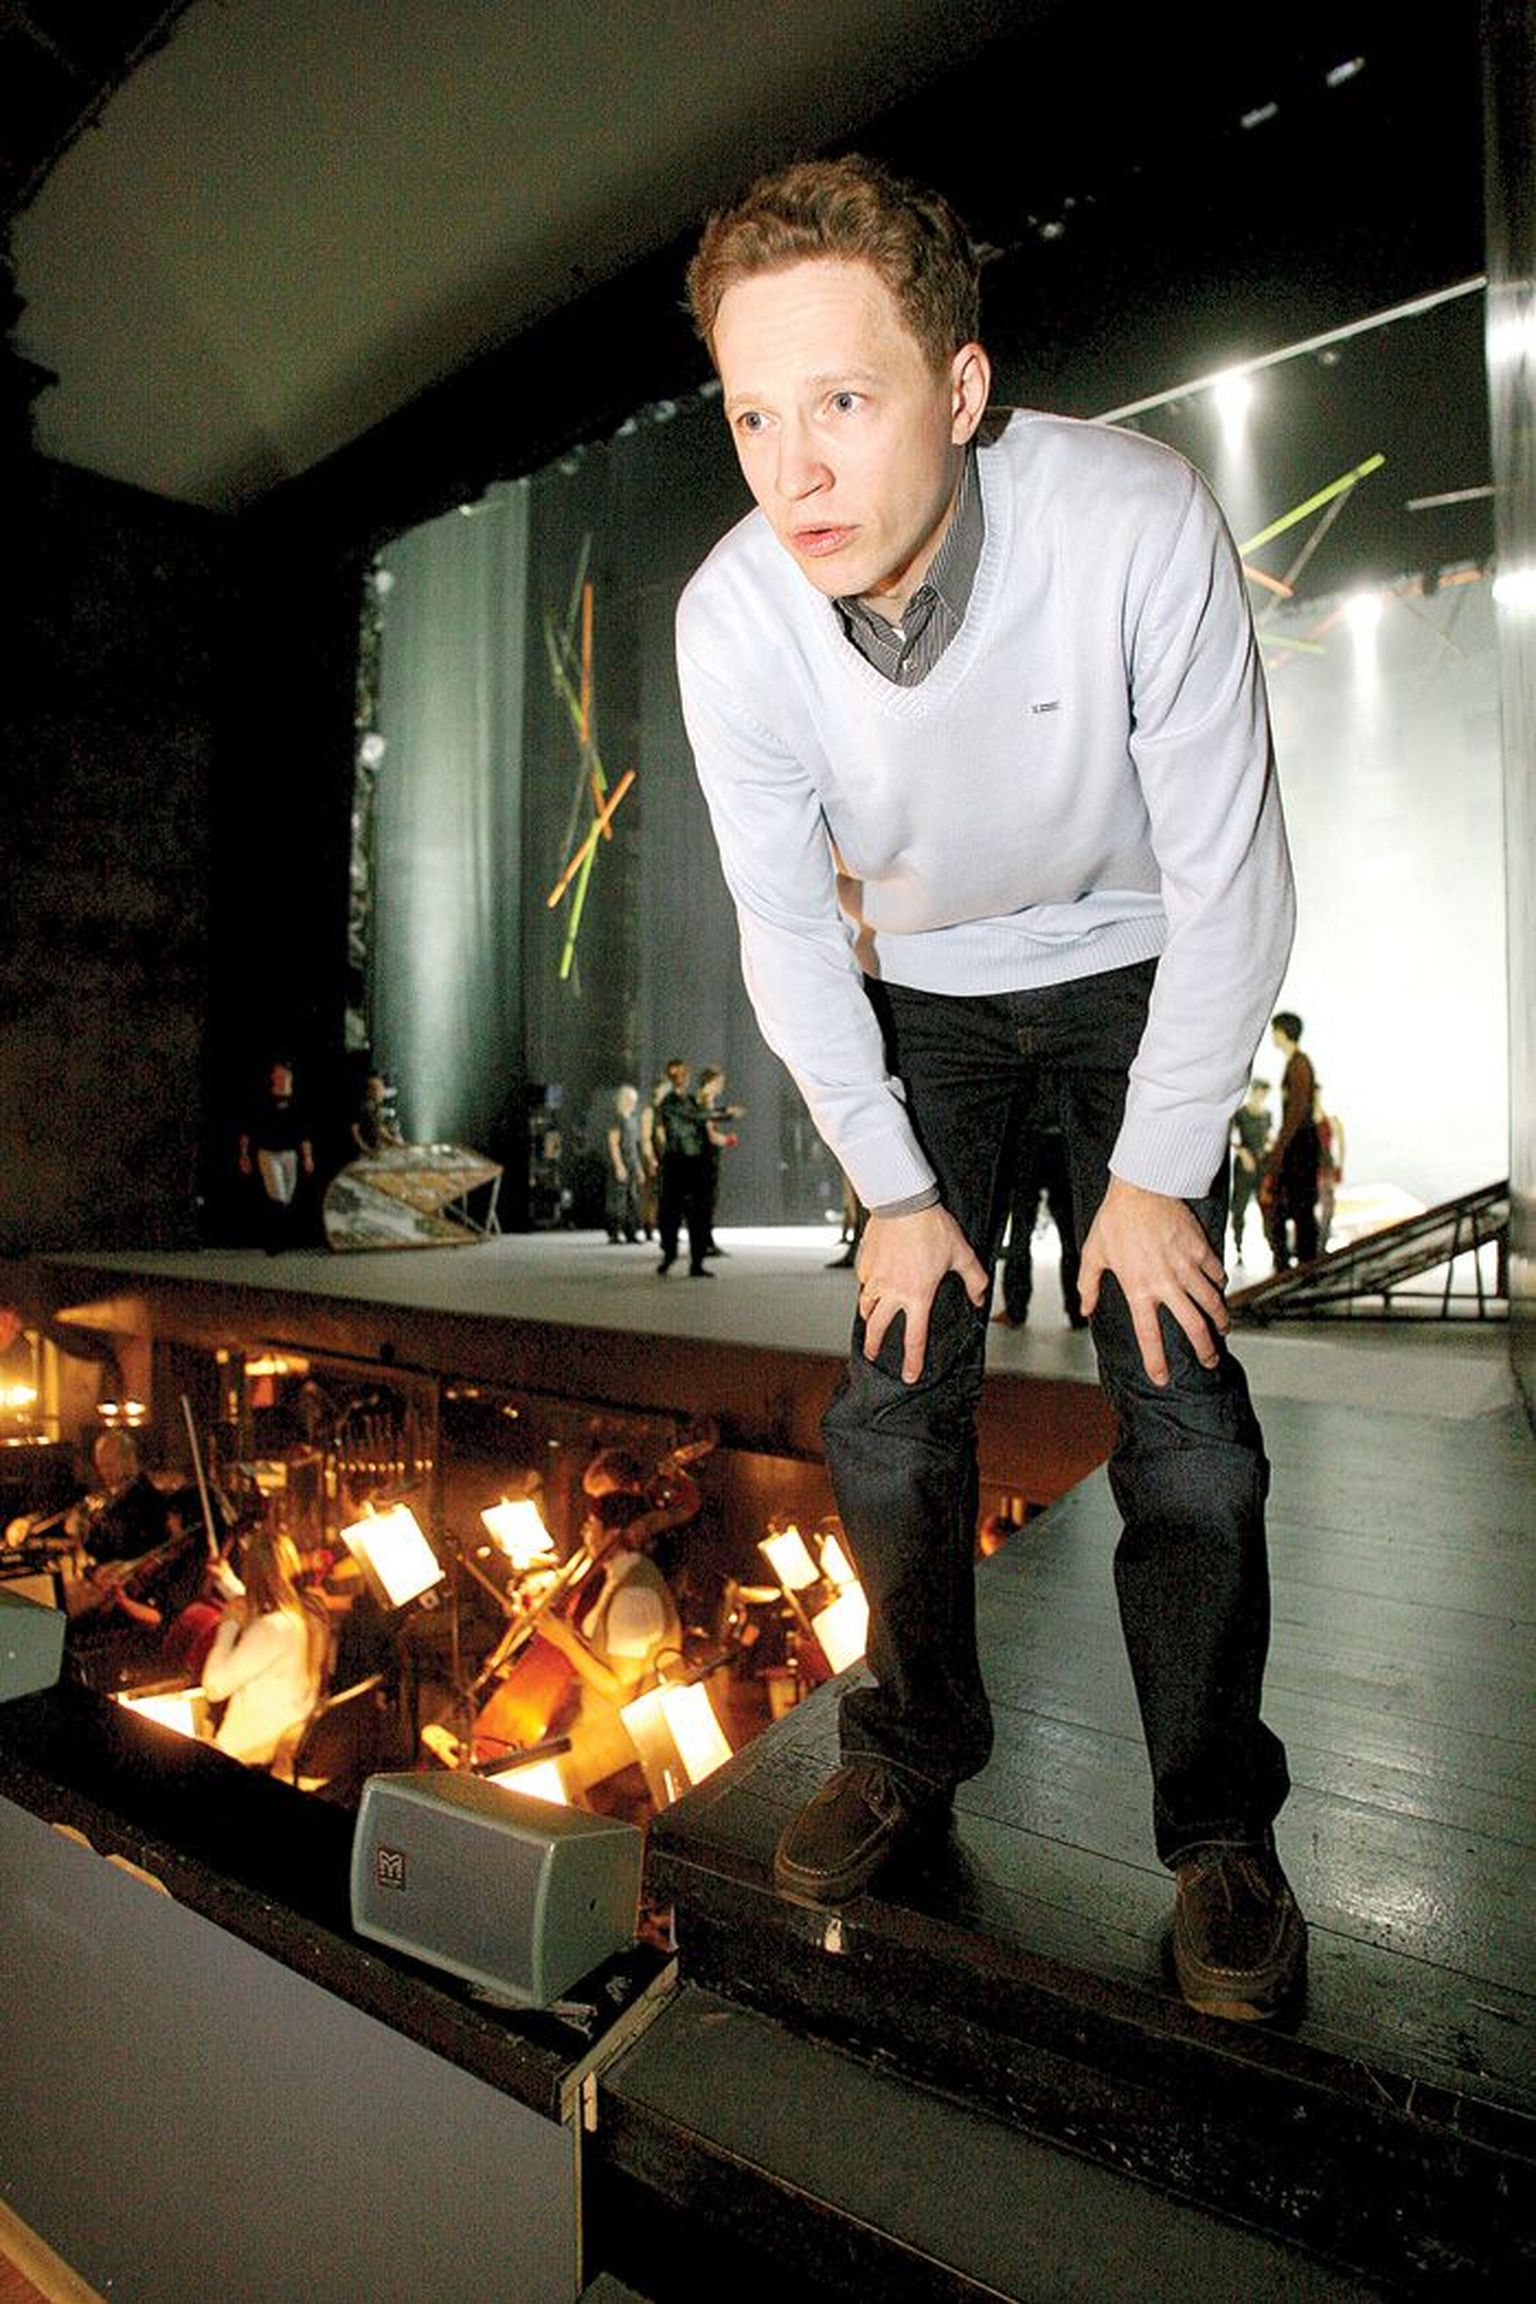 Miina Härma gümnaasiumi, Viljandi kultuuriakadeemia levimuusikuna ja Eesti muusikaakadeemia kompositsiooni erialal 2004 lõpetanud Tauno Aintsi (35) selja taga valmistuvad tantsijad ja muusikud «Mowgli» prooviks.